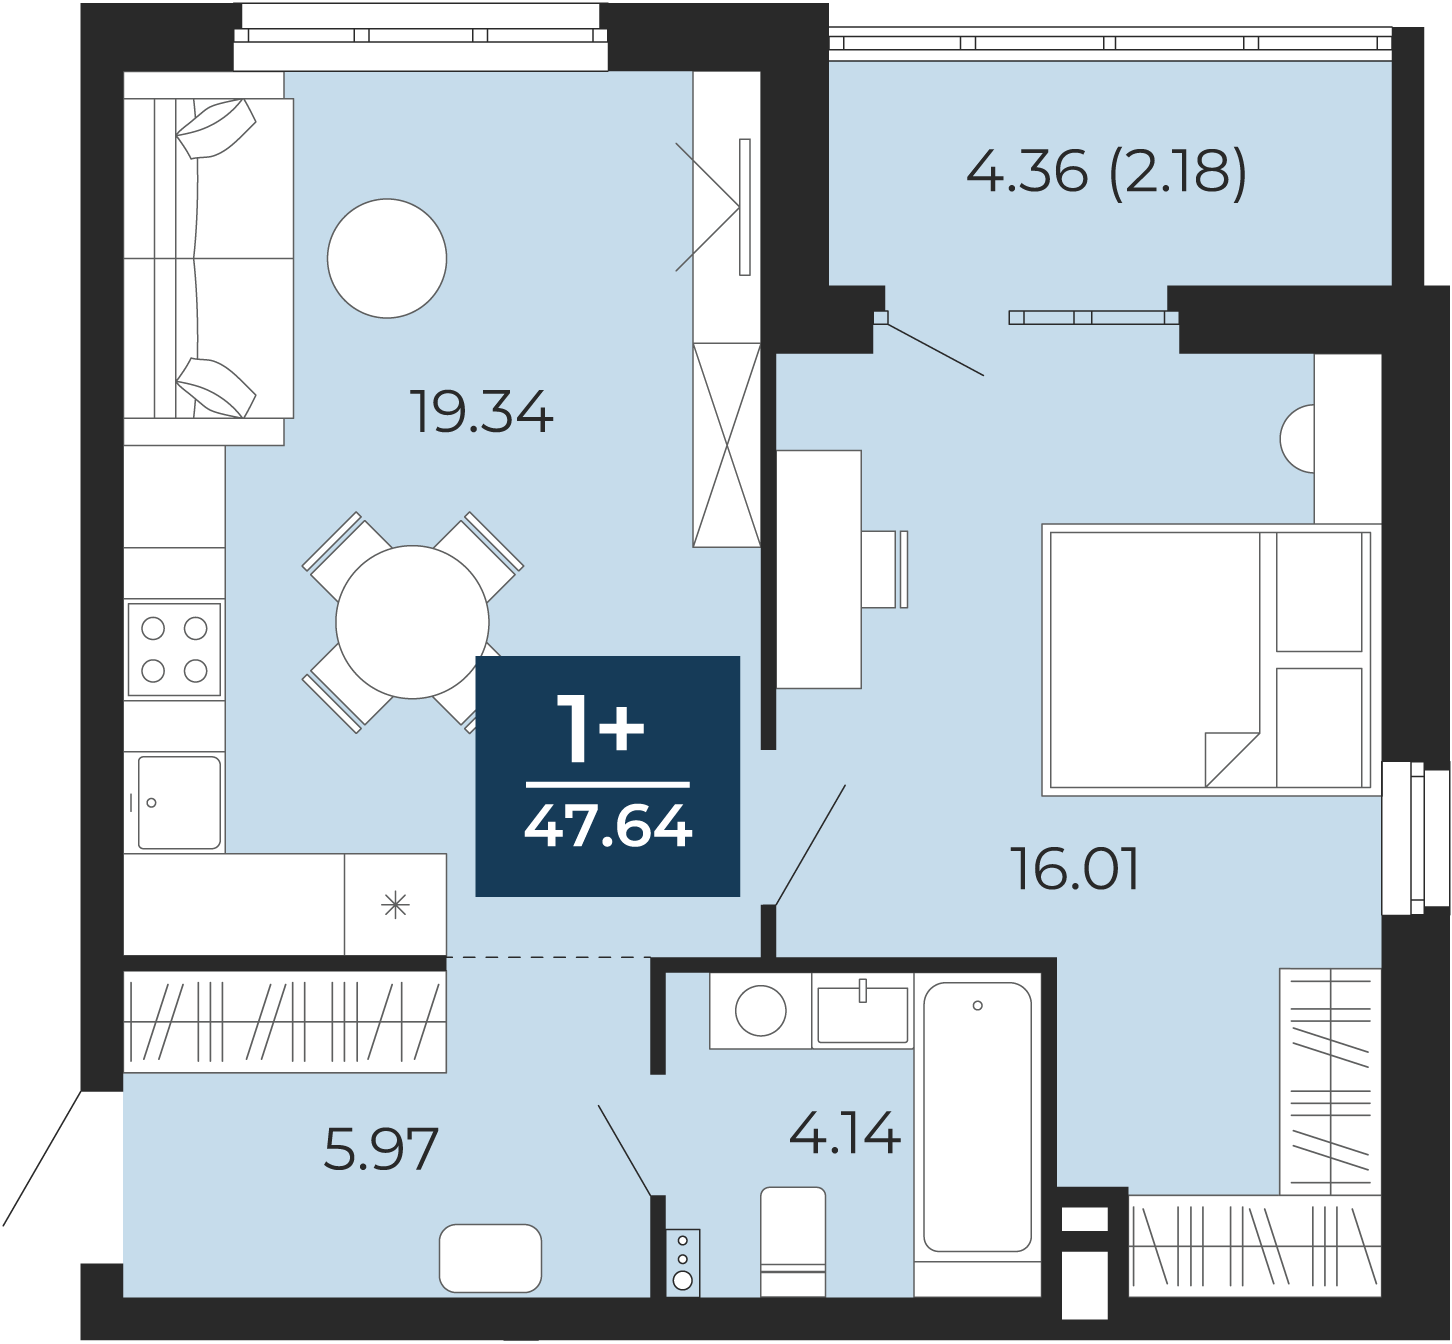 Квартира № 299, 1-комнатная, 47.64 кв. м, 3 этаж